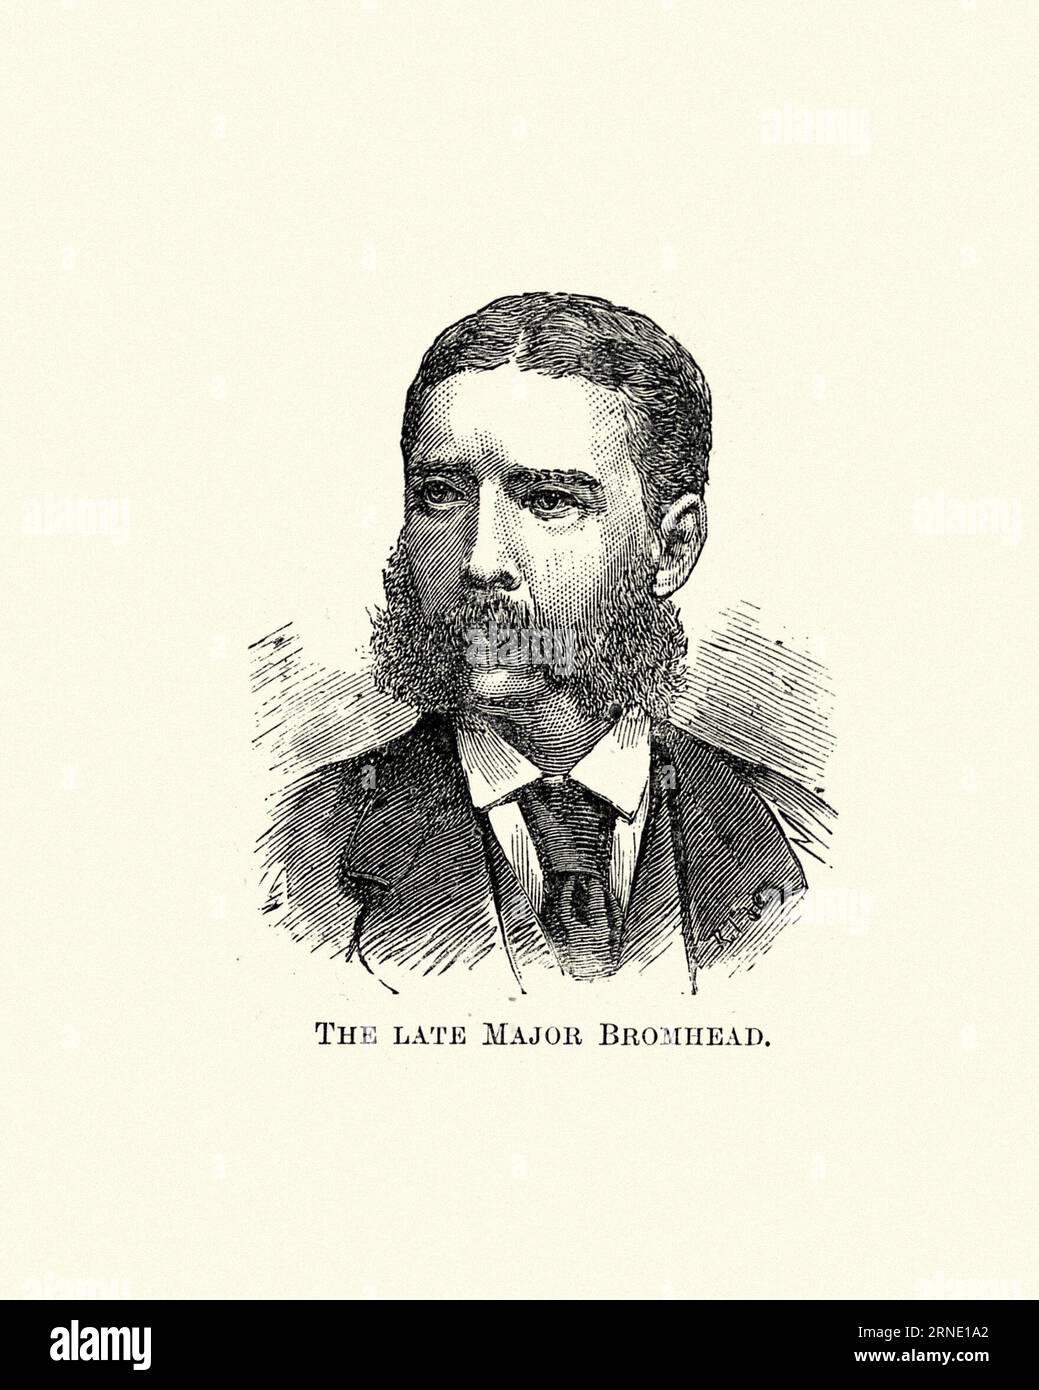 Gravure vintage du major Gonville Bromhead VC (29 août 1845 - 9 février 1891) était un officier de l'armée britannique et récipiendaire de la Croix de Victoria. Il a reçu la médaille pour son rôle dans la défense de Rorke's Drift en janvier 1879 Banque D'Images